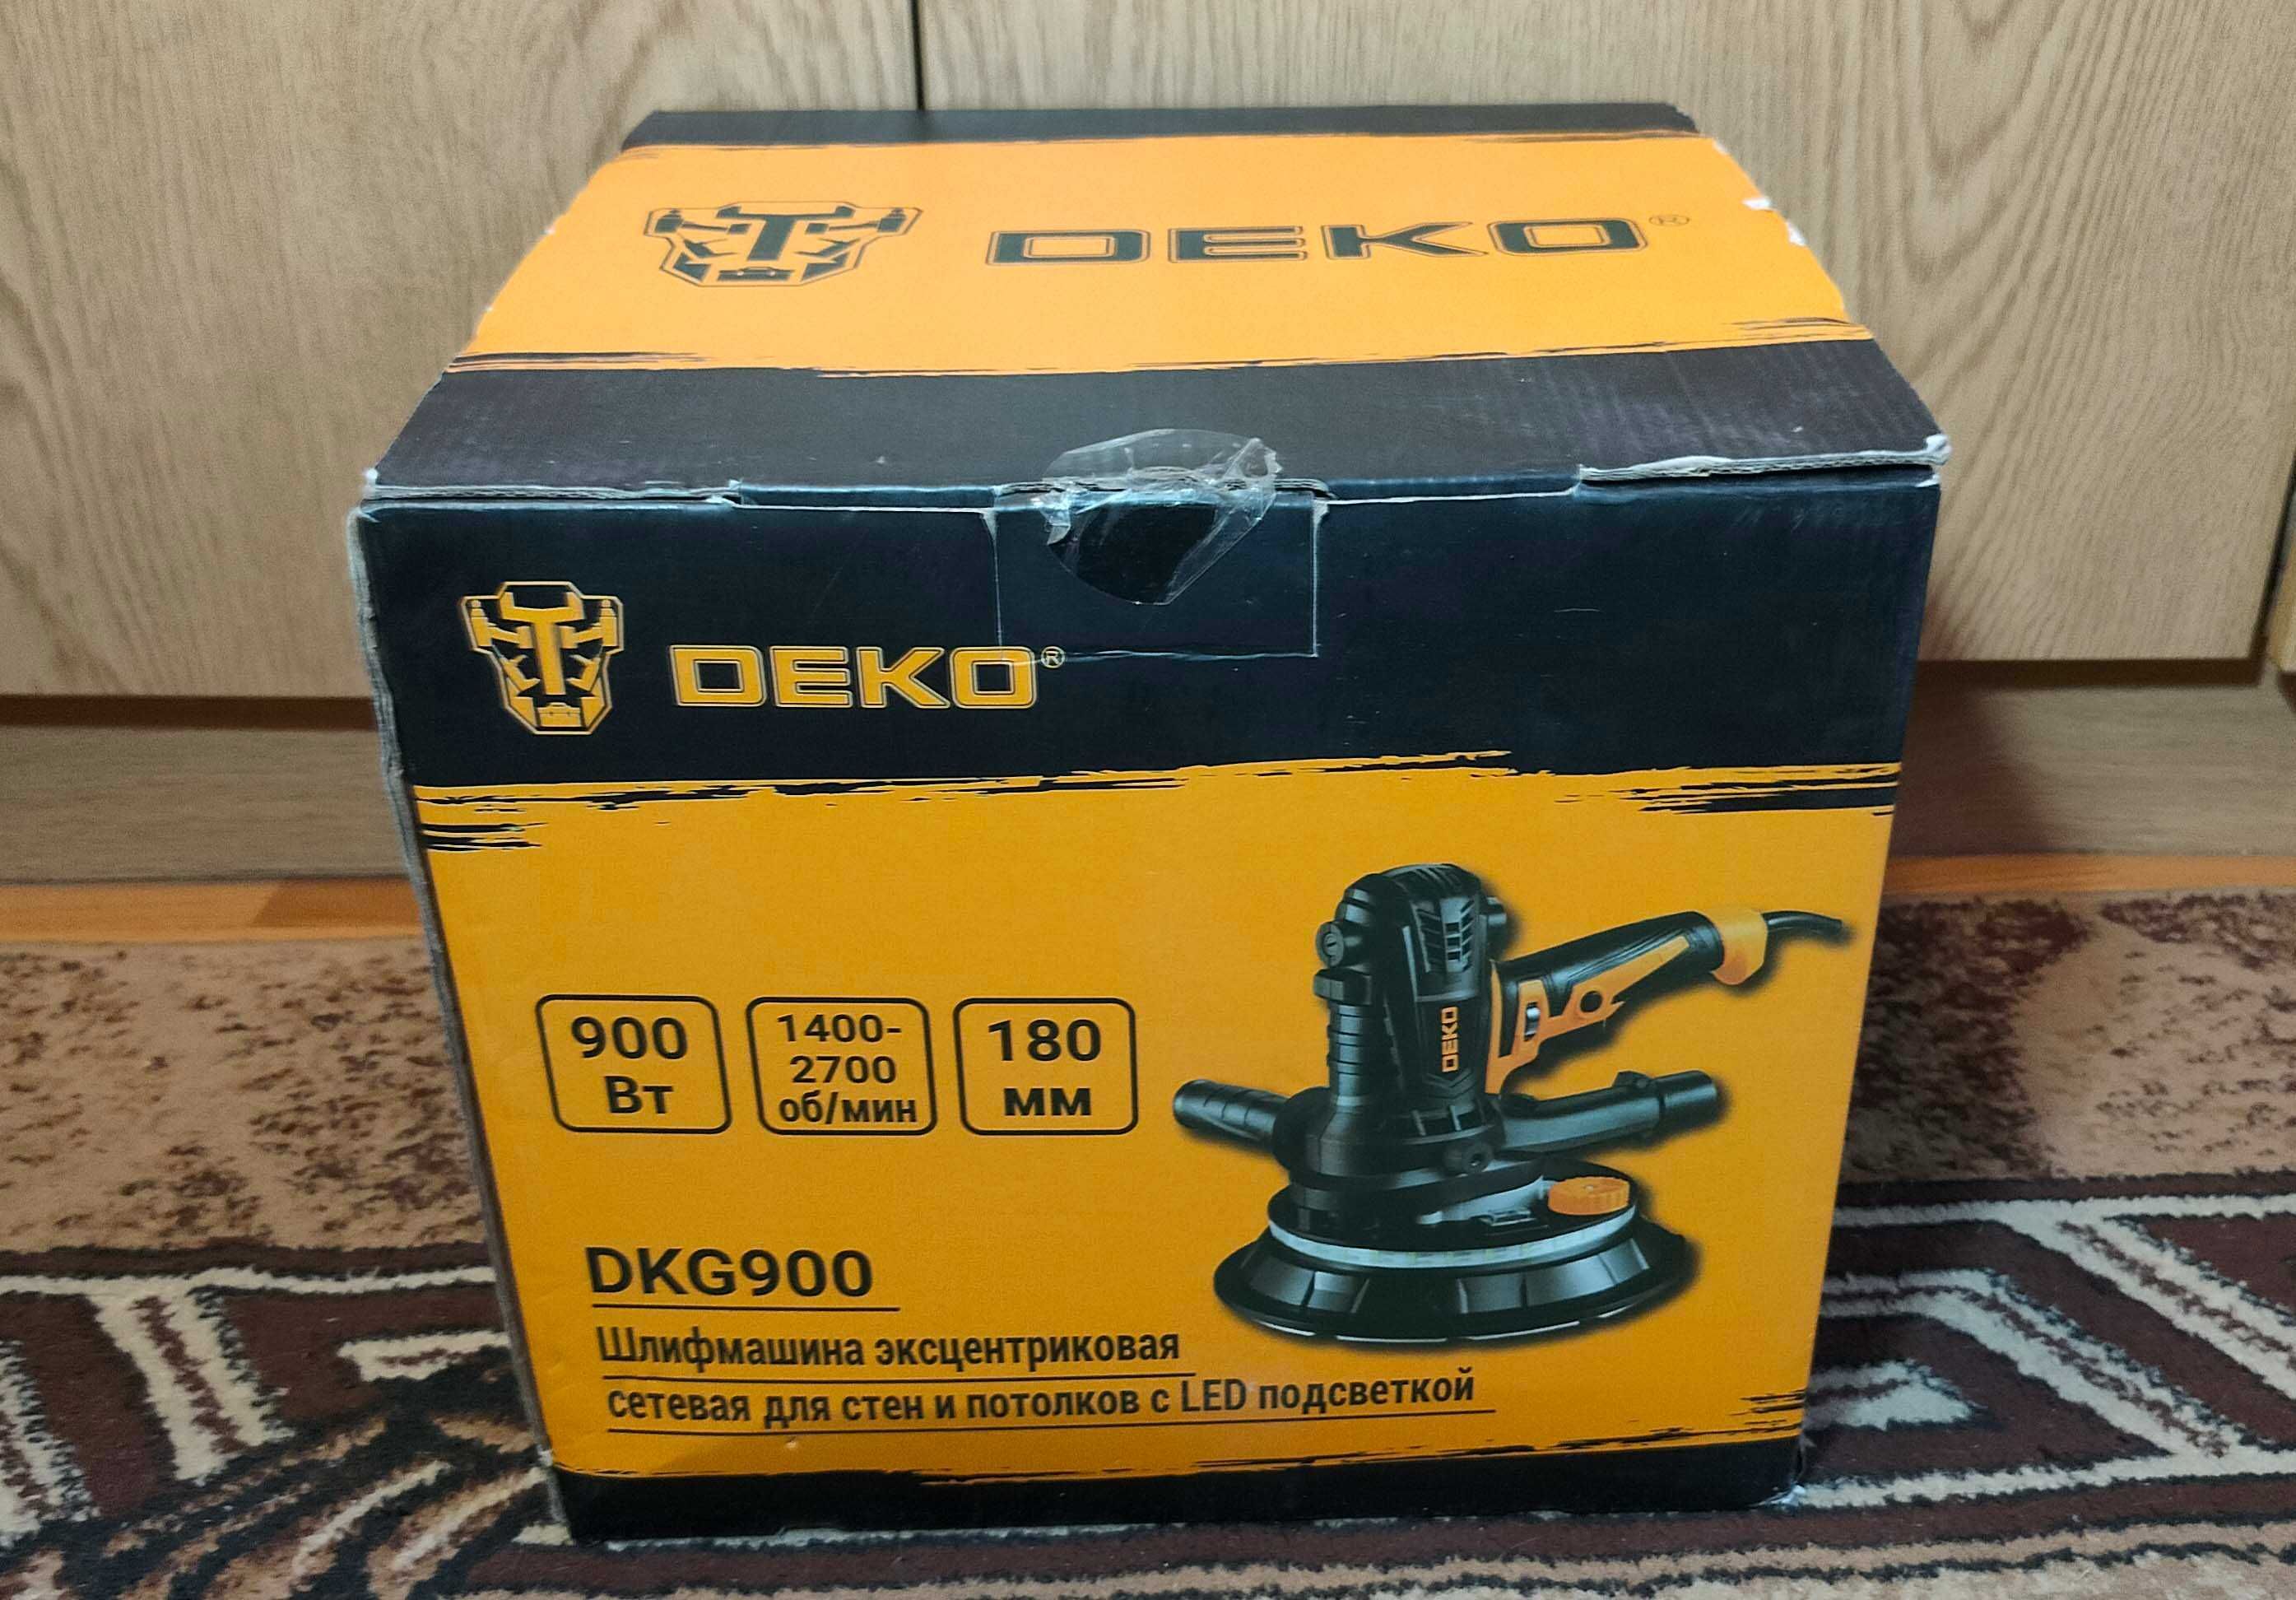 Эксцентриковая сетевая шлифмашина DEKO DKG900 / 900 Вт